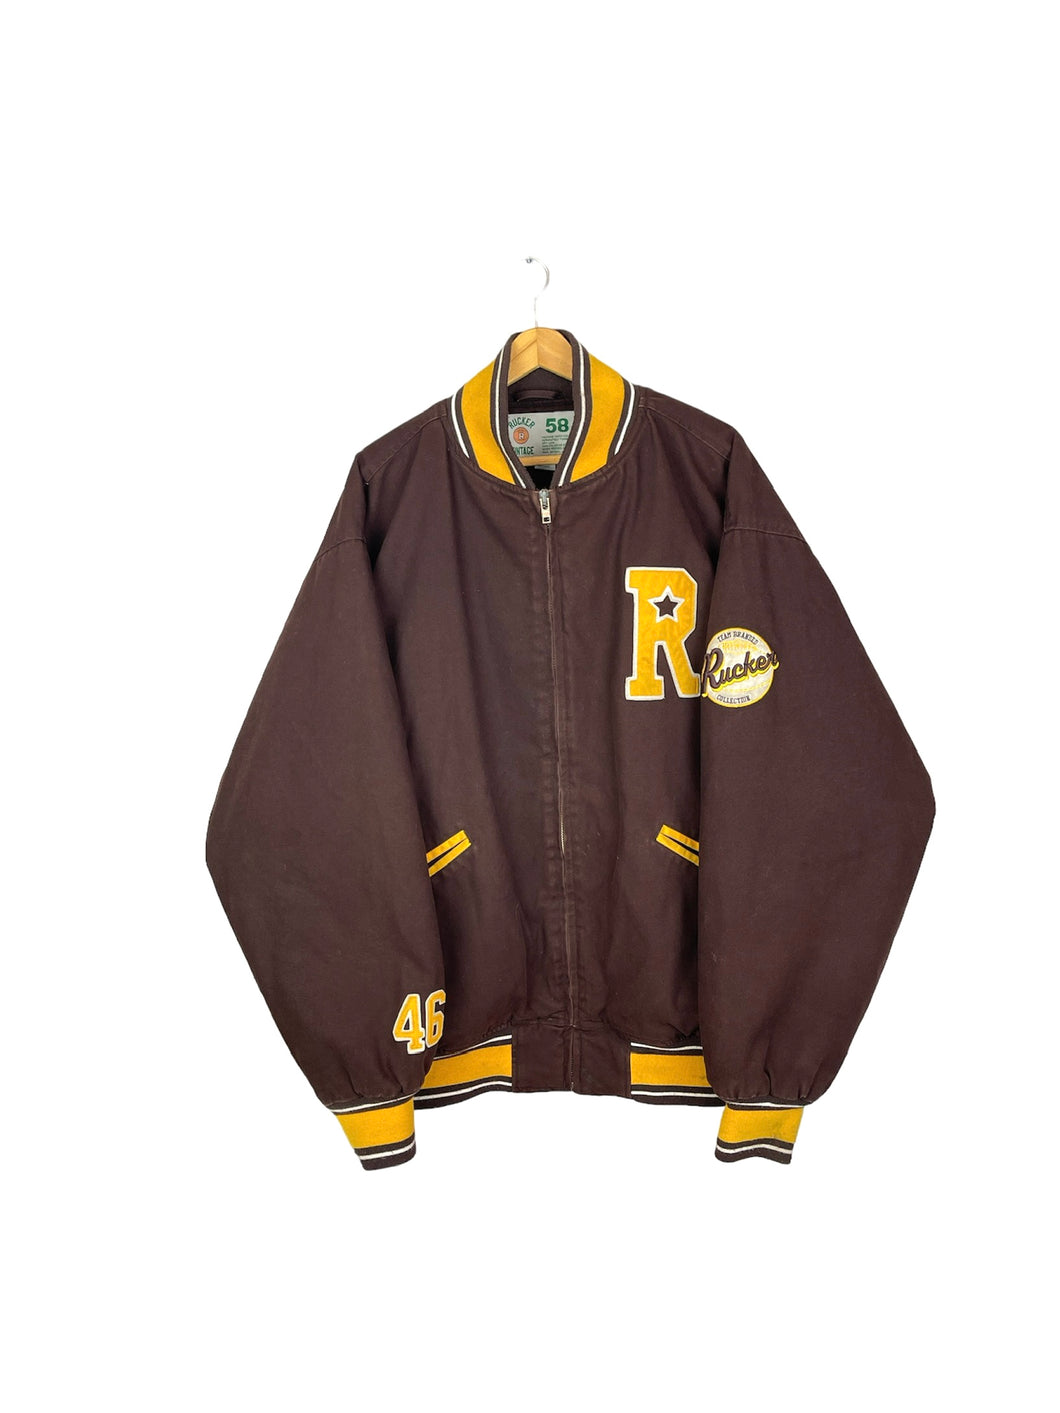 Rucker Vintage Varsity Jacket - XXLarge